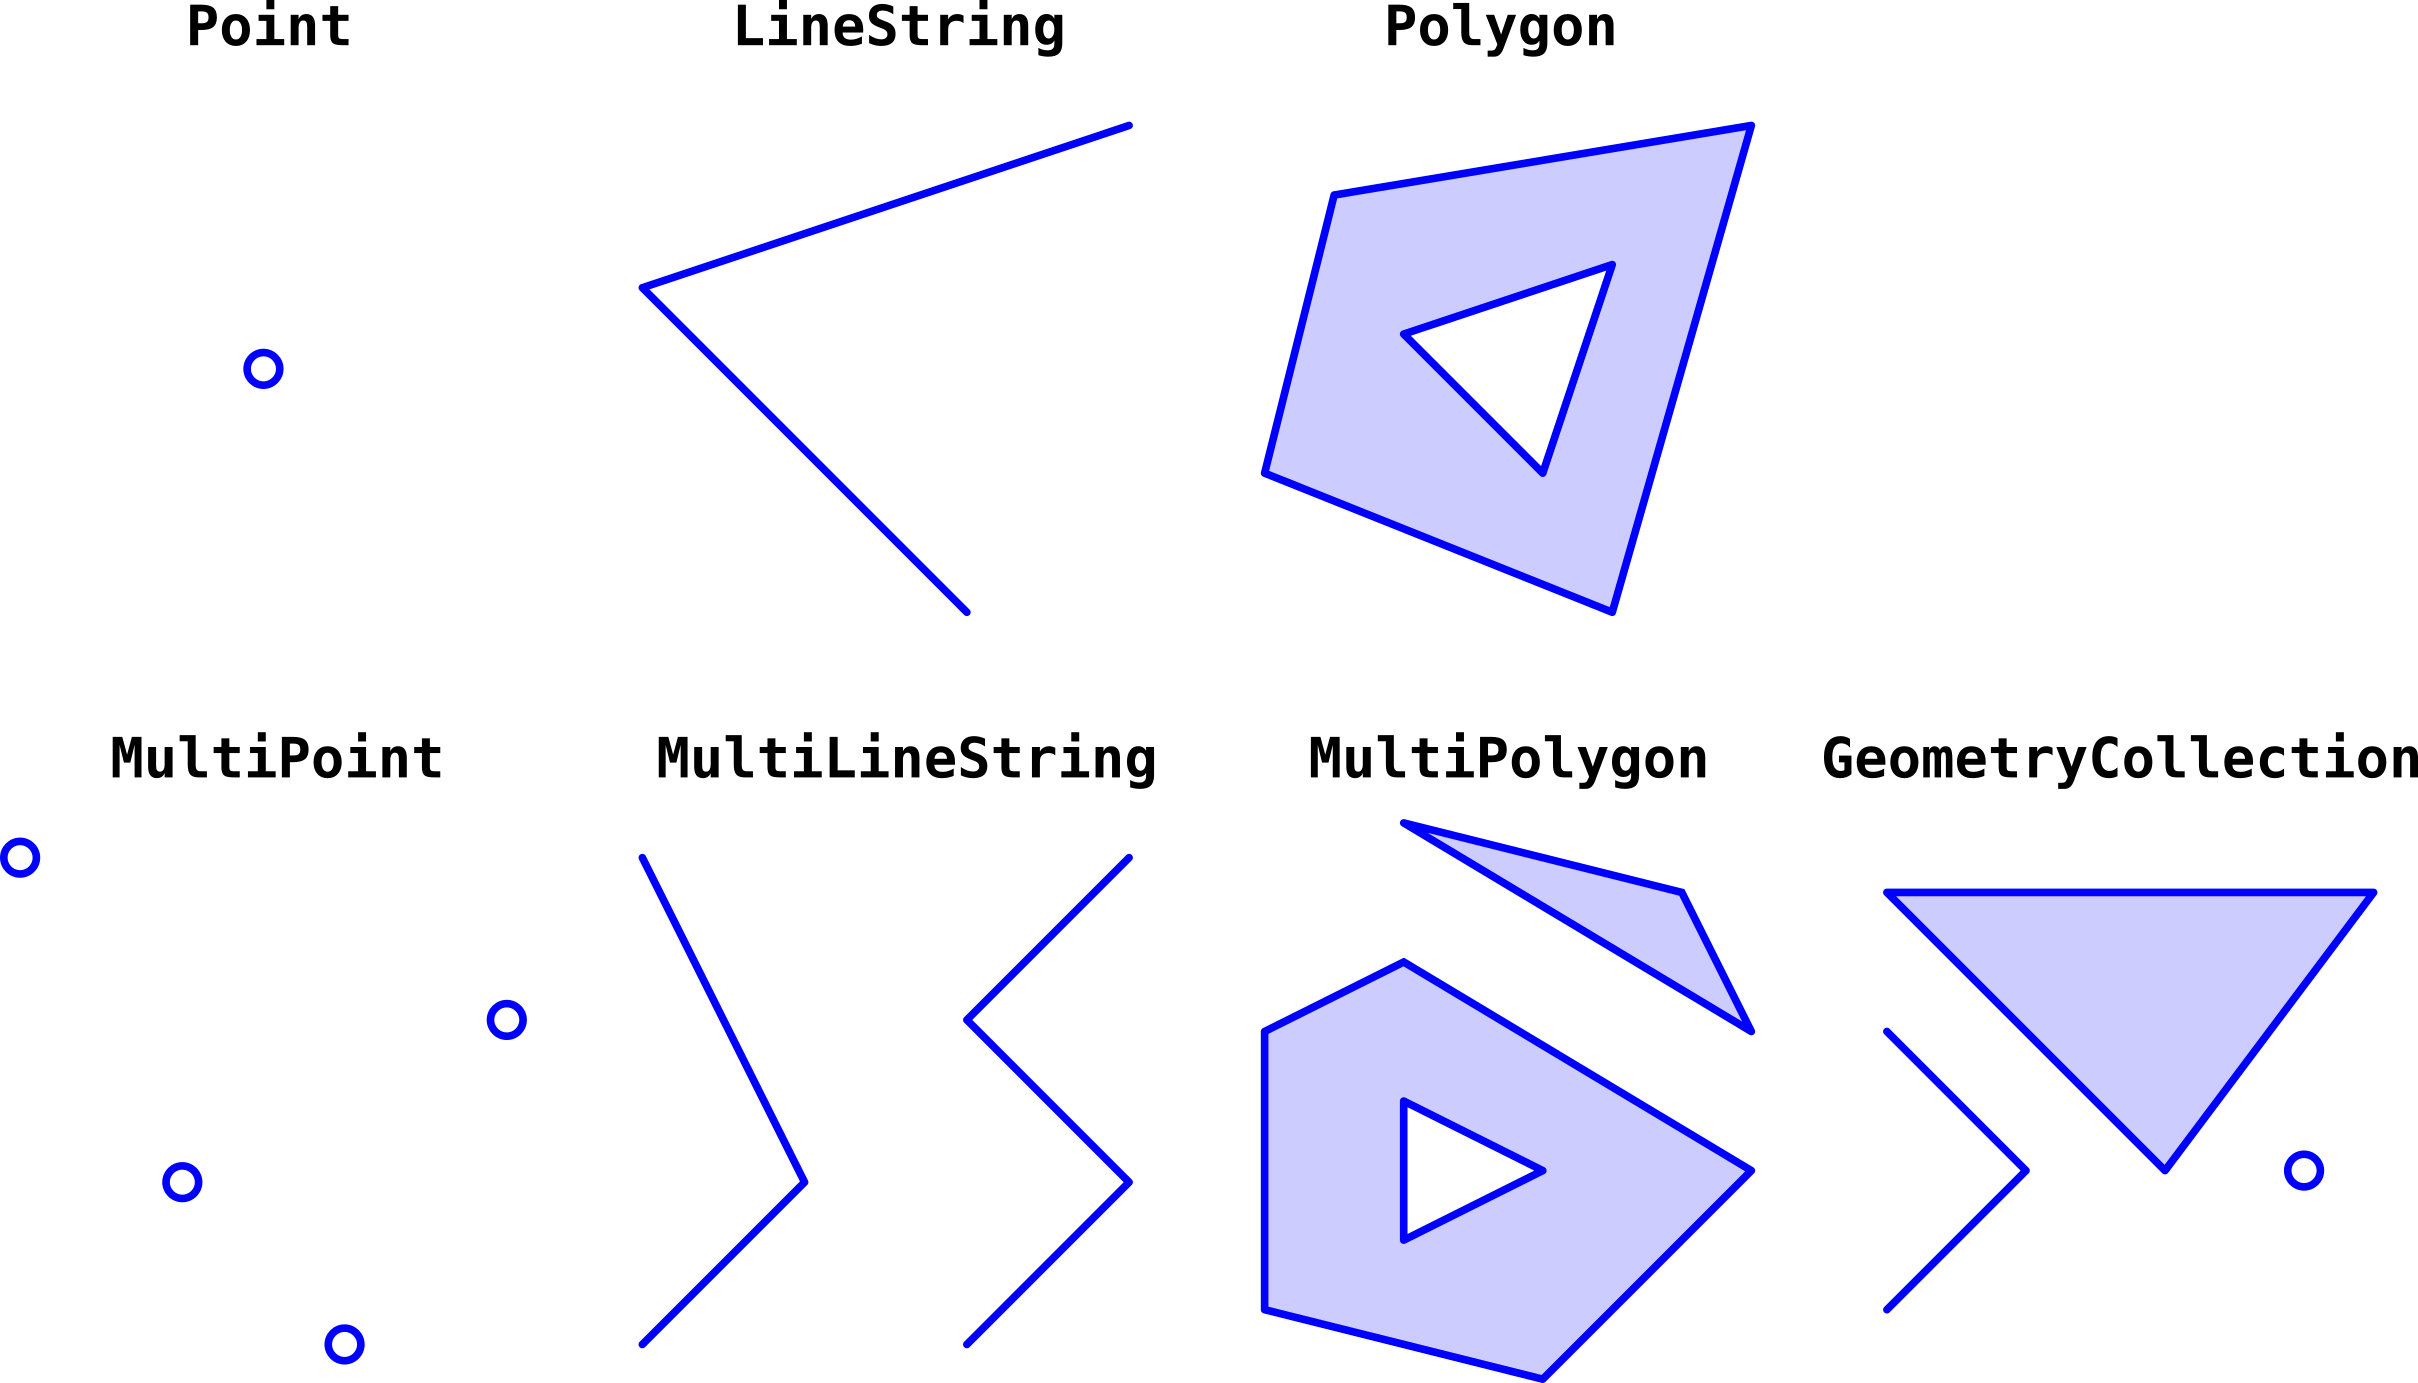 Geometry types